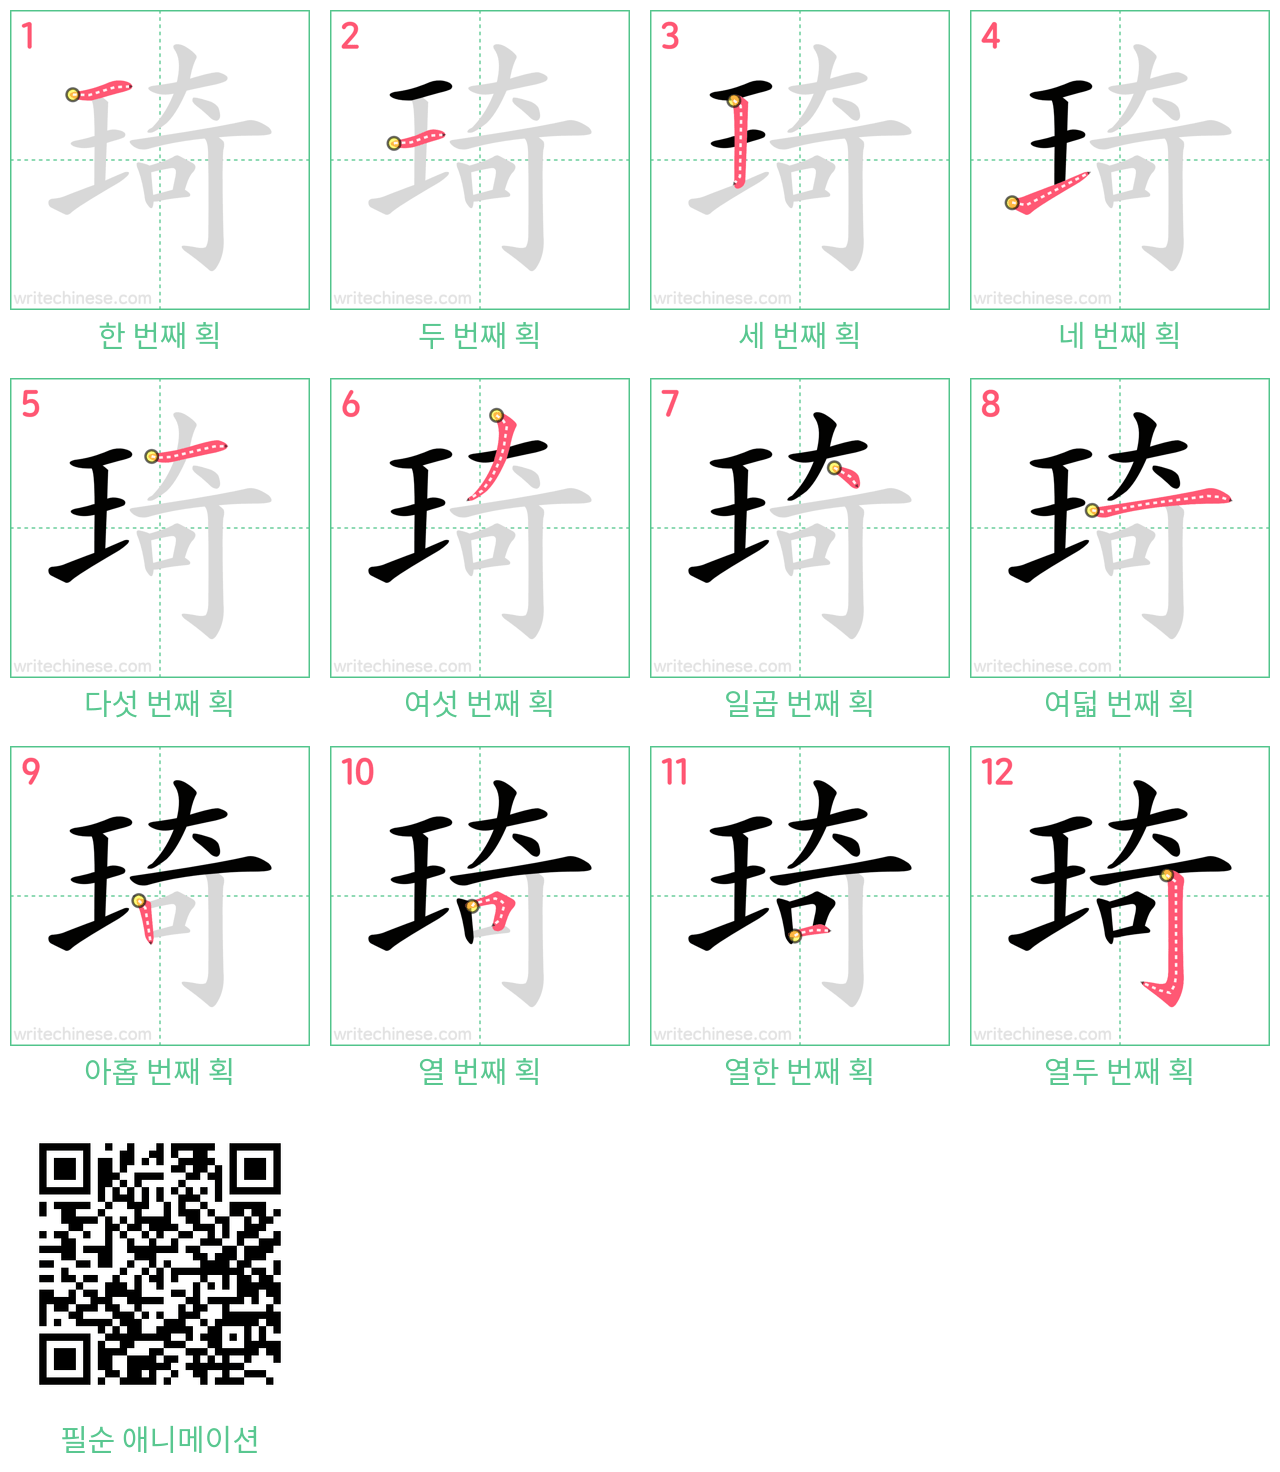 琦 step-by-step stroke order diagrams